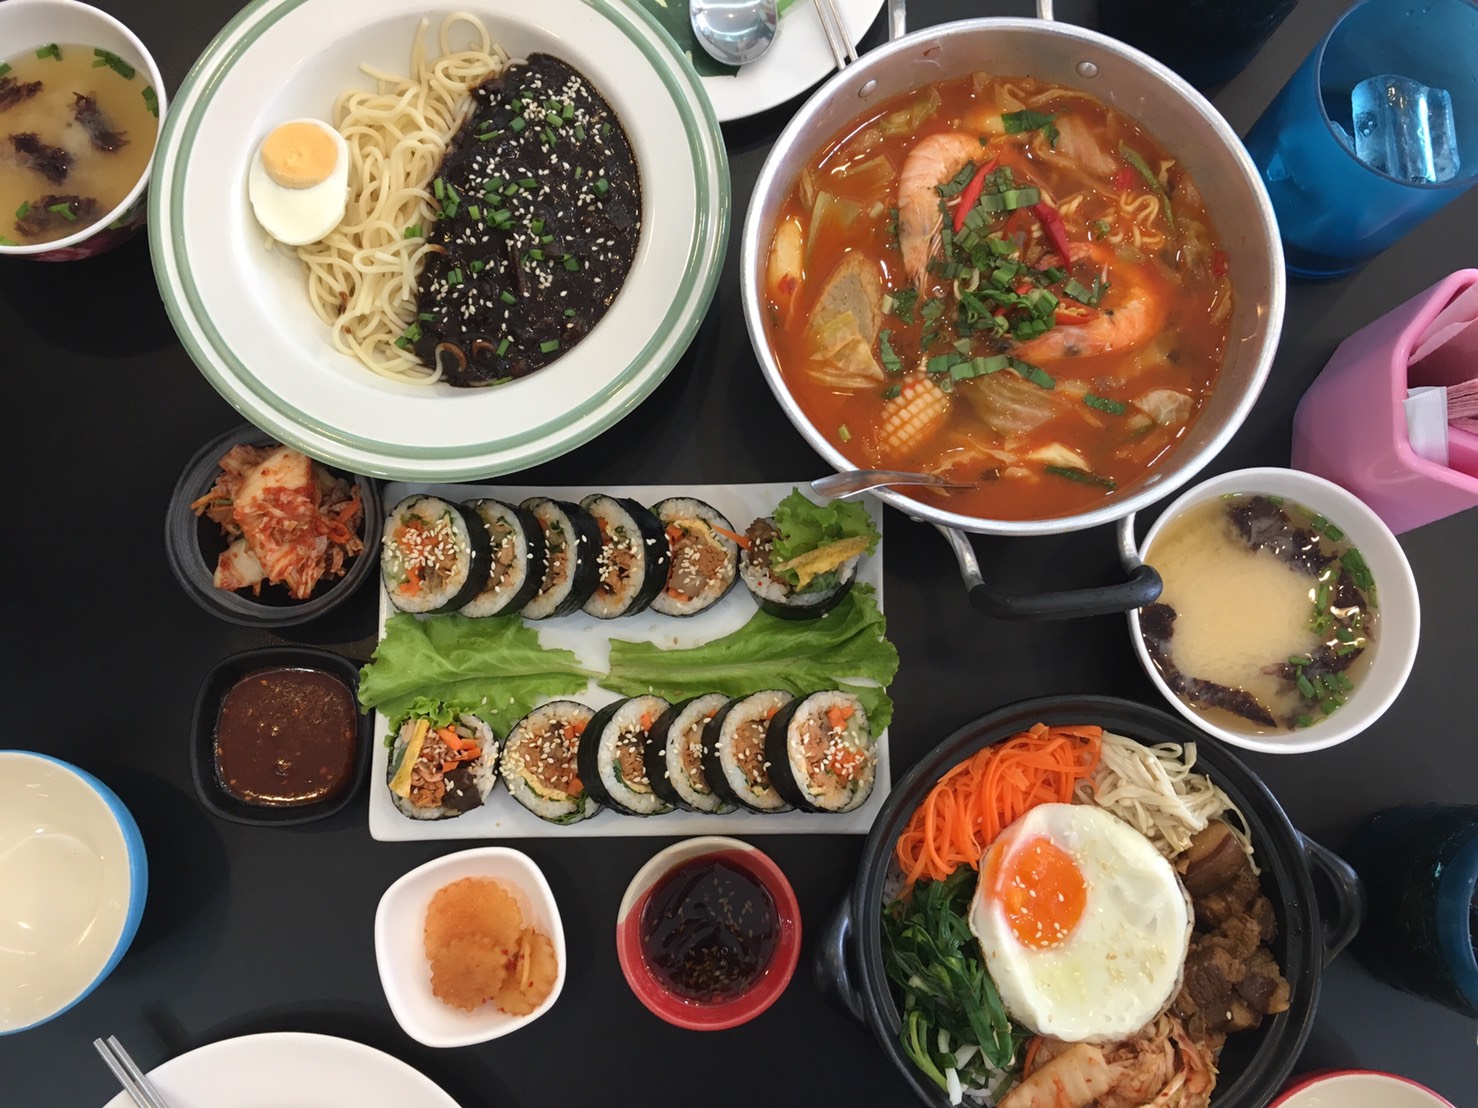 รีวิวร้าน 사랑 - Sarang ร้านอาหารเกาหลี อร่อย ไม่แพง ใกล้มหาวิทยาลัยขอนแก่น -  Pantip